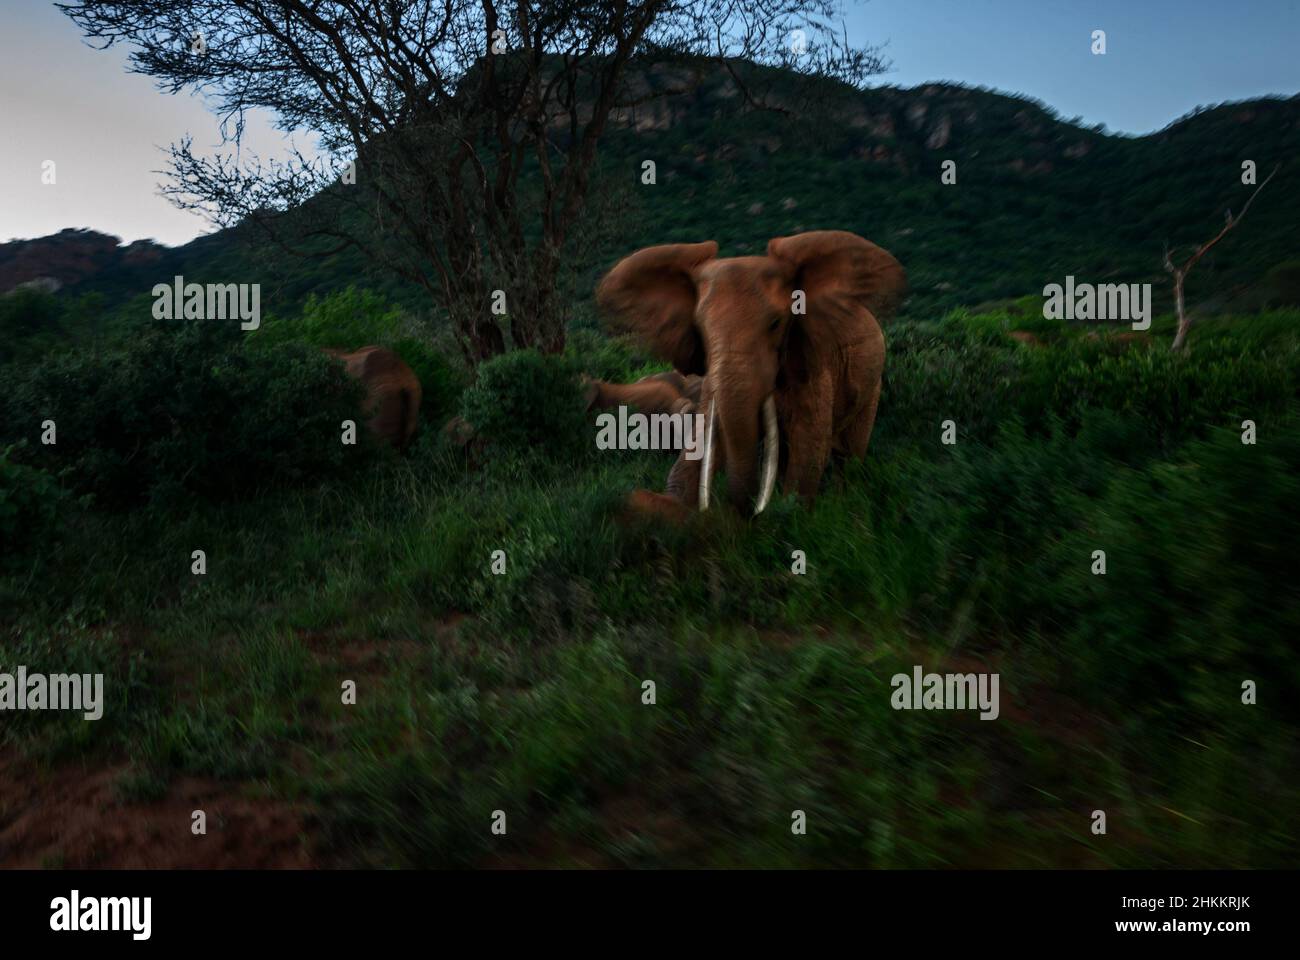 Afrikanischer Buschelefant - Loxodonta africana, ikonisches Mitglied der African Big Five, Tsavo West, Kenia. Stockfoto